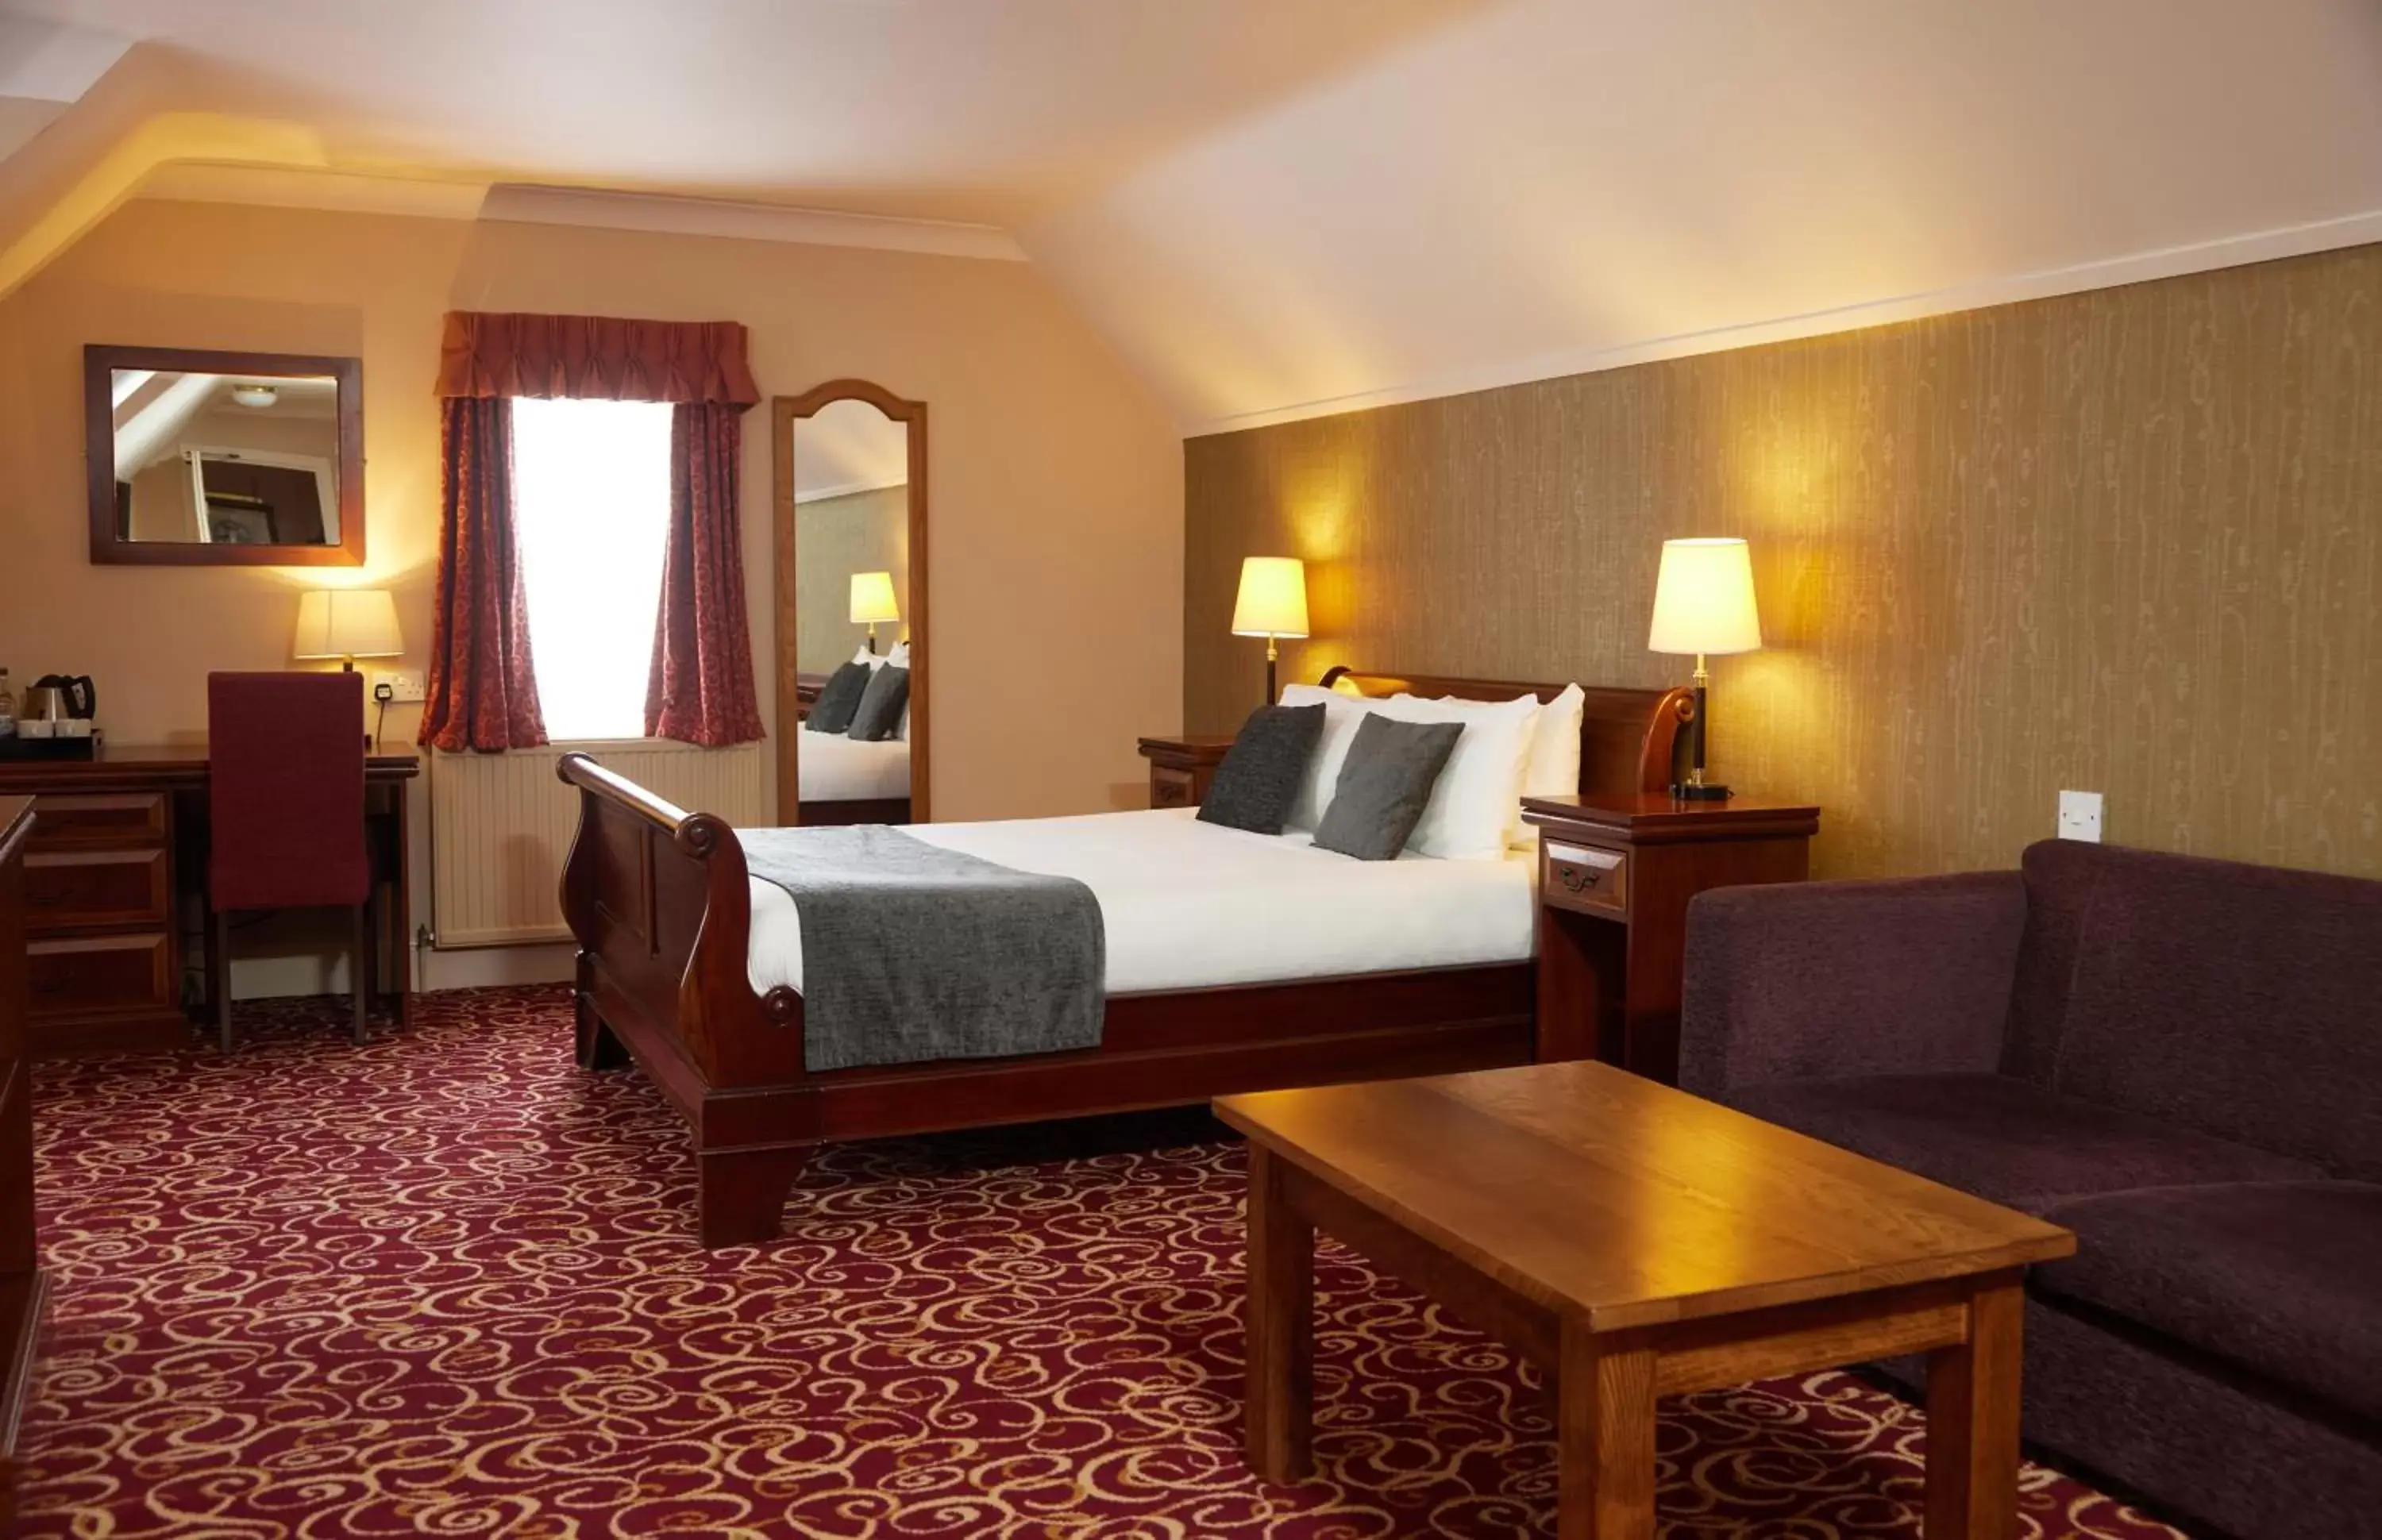 Bedroom in Fieldhead Hotel by Greene King Inns